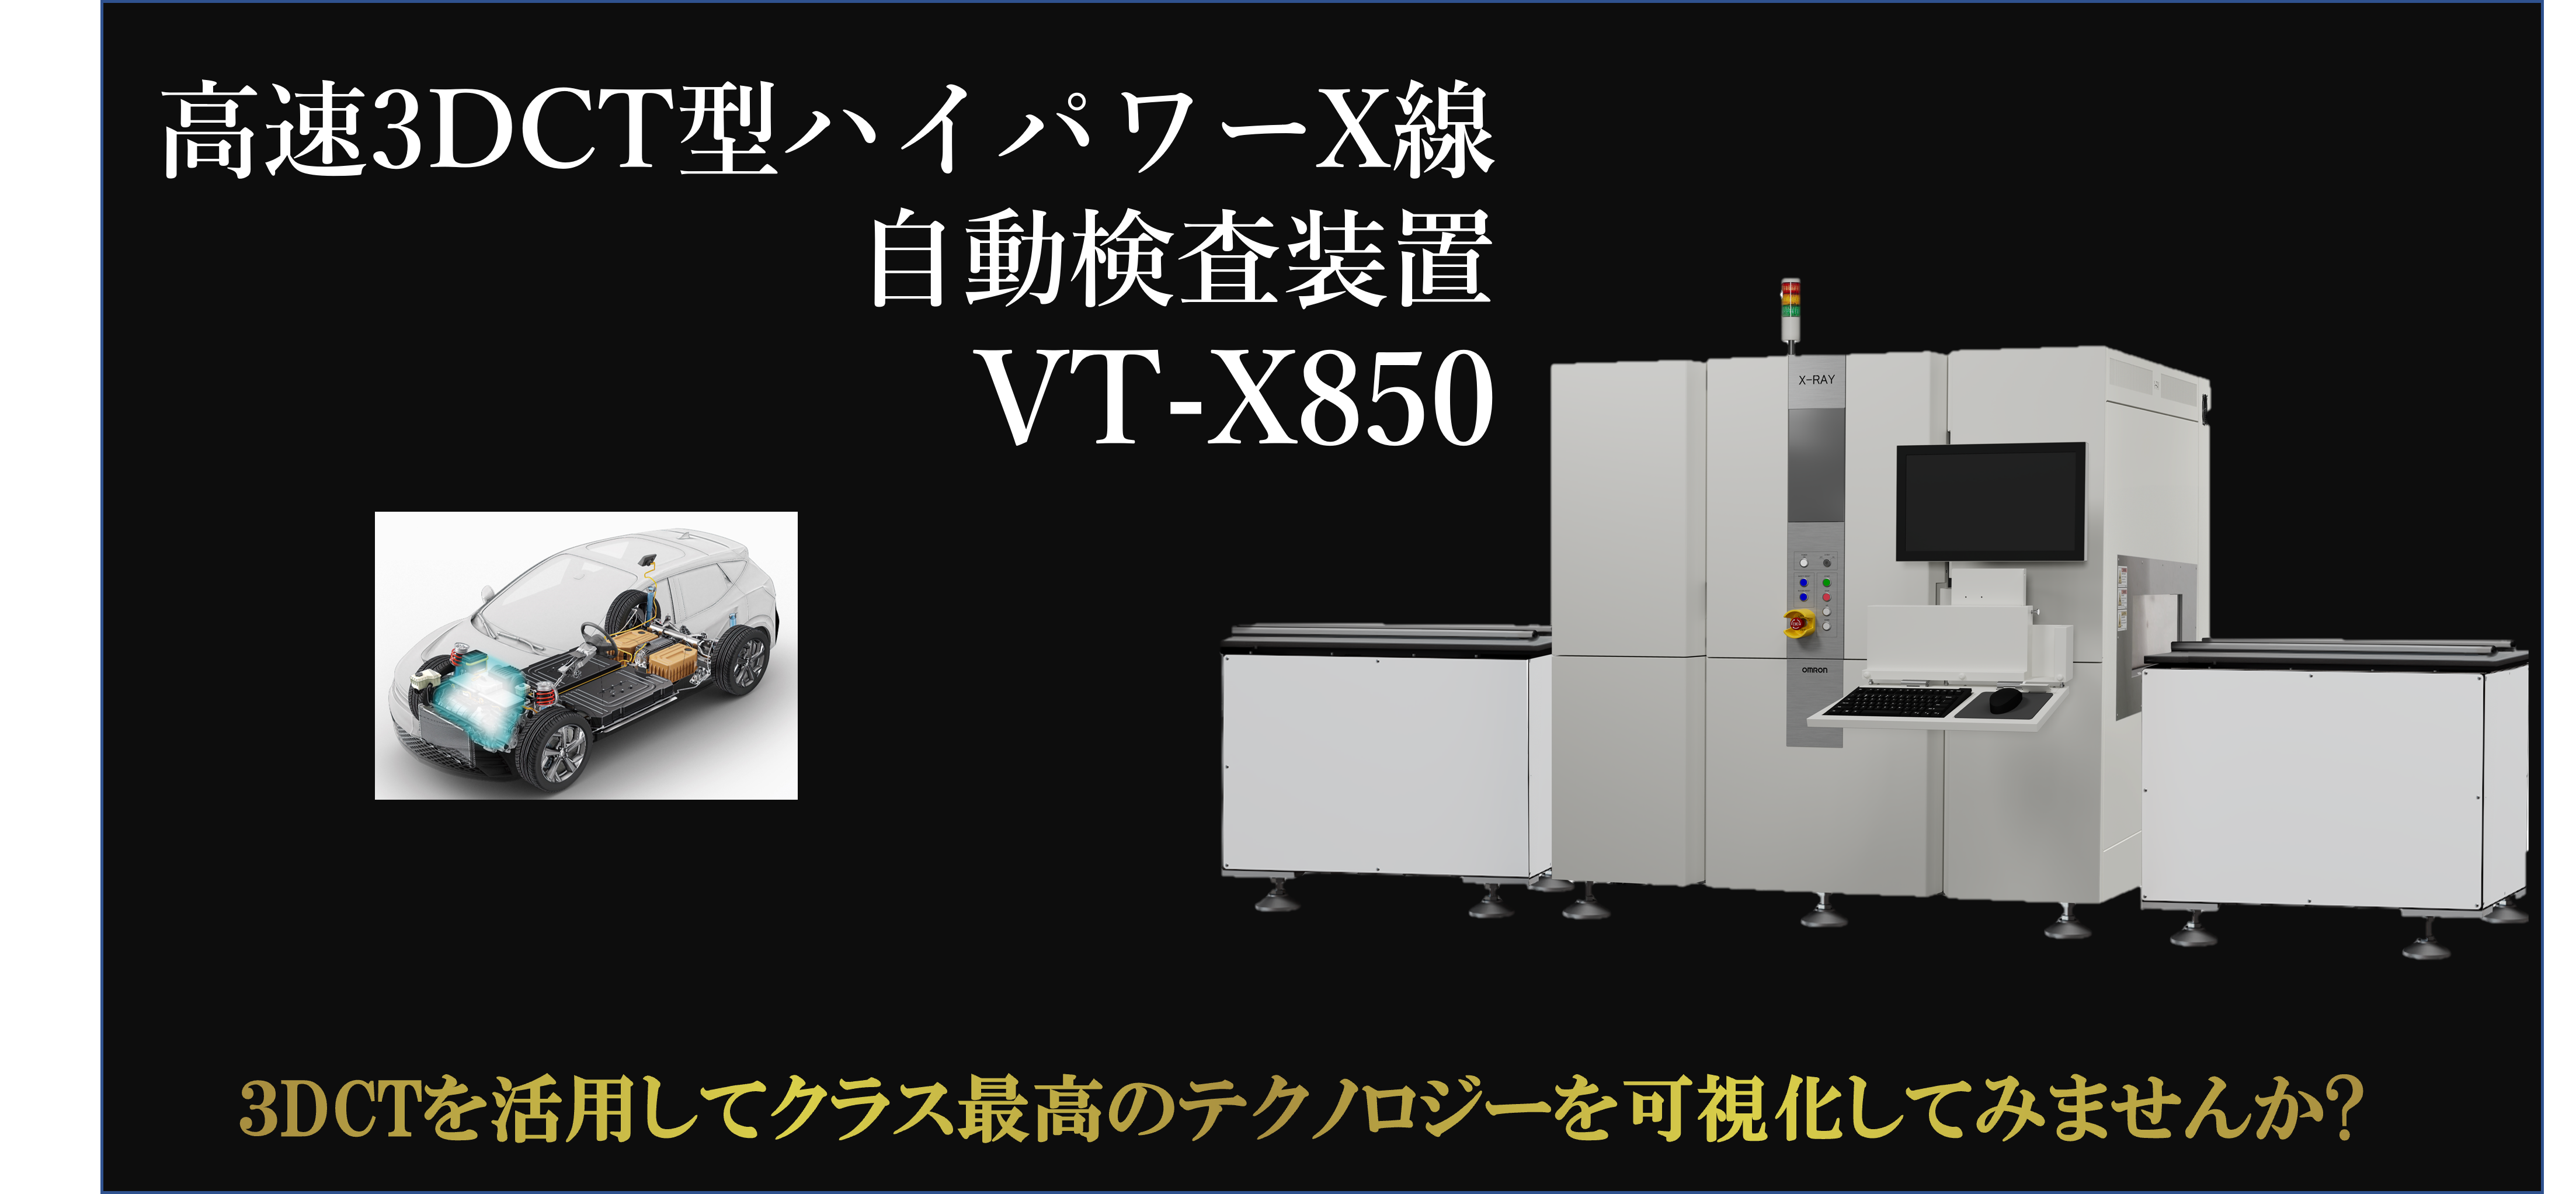 オムロン社製高速3DCT型ハイパワーX線自動検査装置 VT-X850